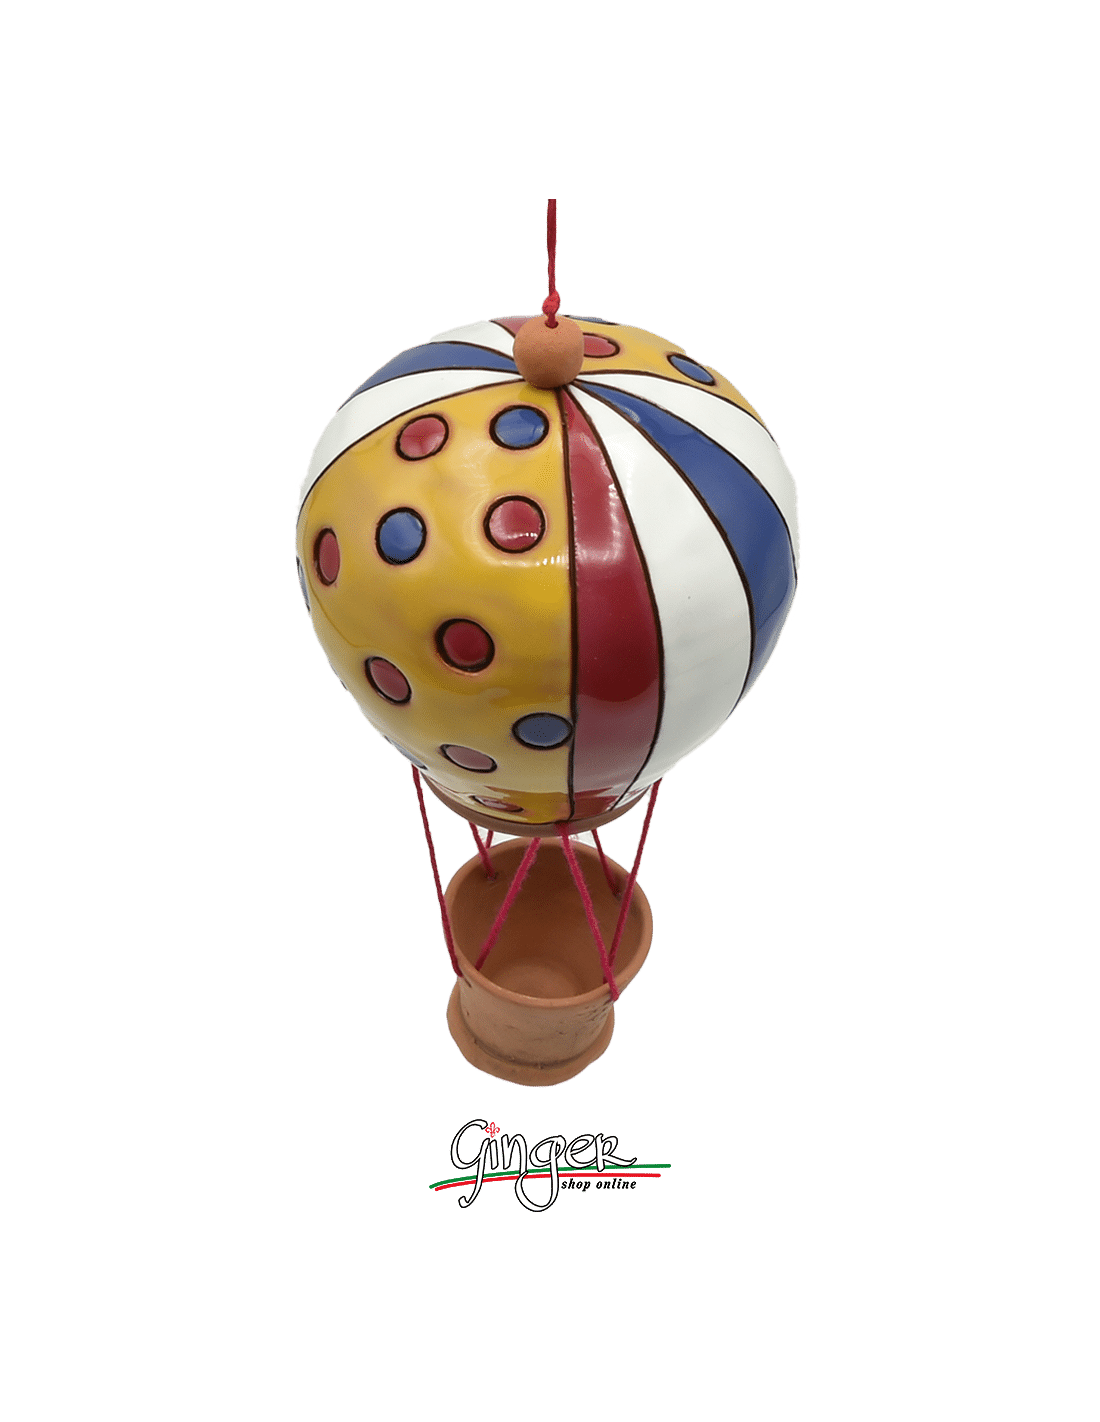 Ceramic Hot Air Balloon - diameter 9 cm (3.54) height 17 cm (6.70) - M8563